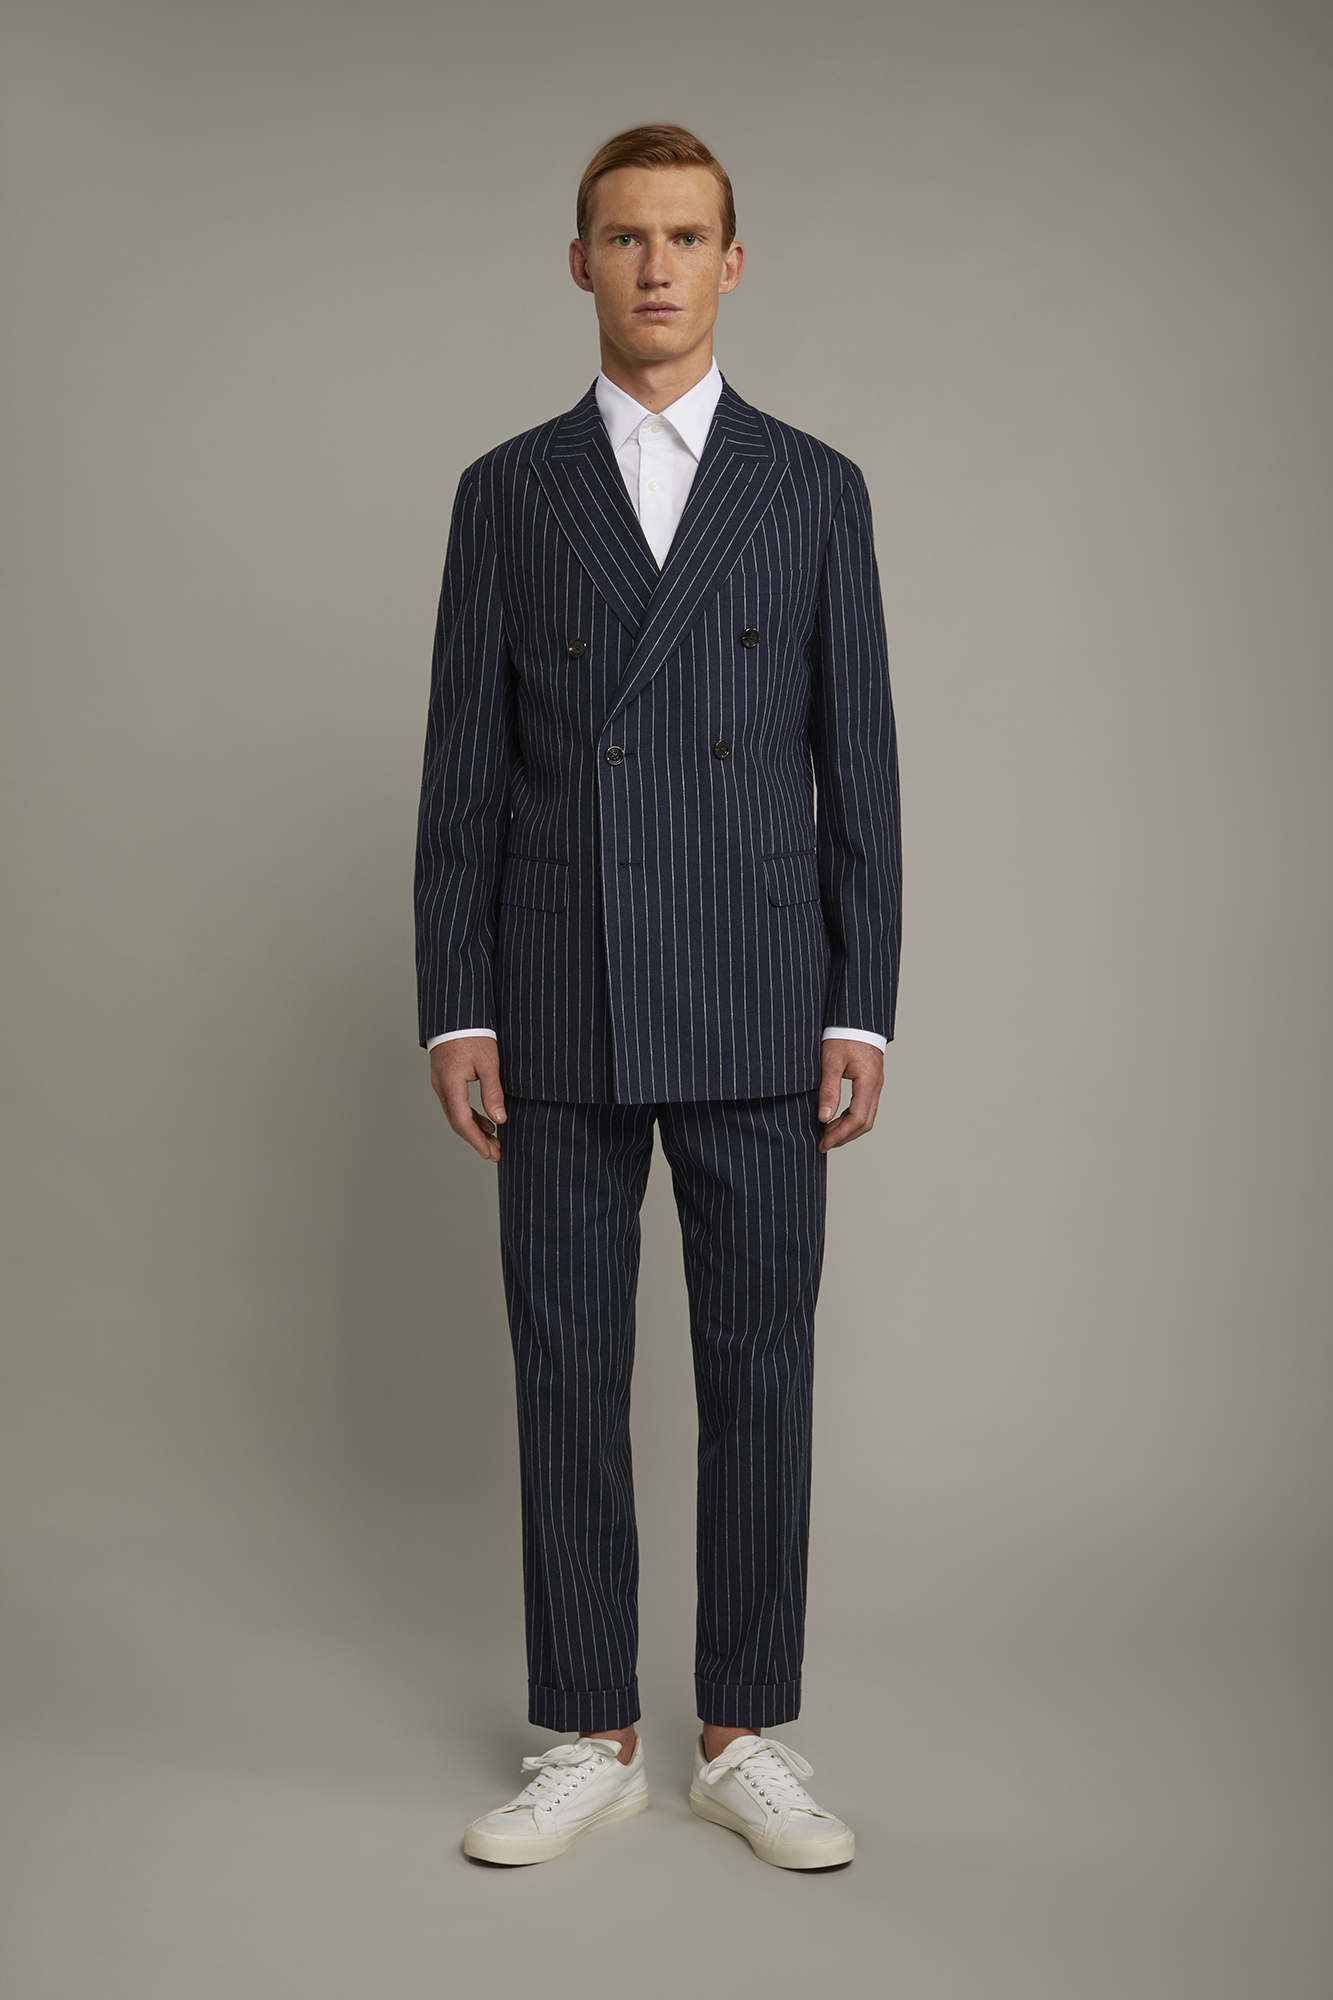 Pantalone classico uomo con doppia pince tessuto lino e cotone con disegno gessato regular fit image number null